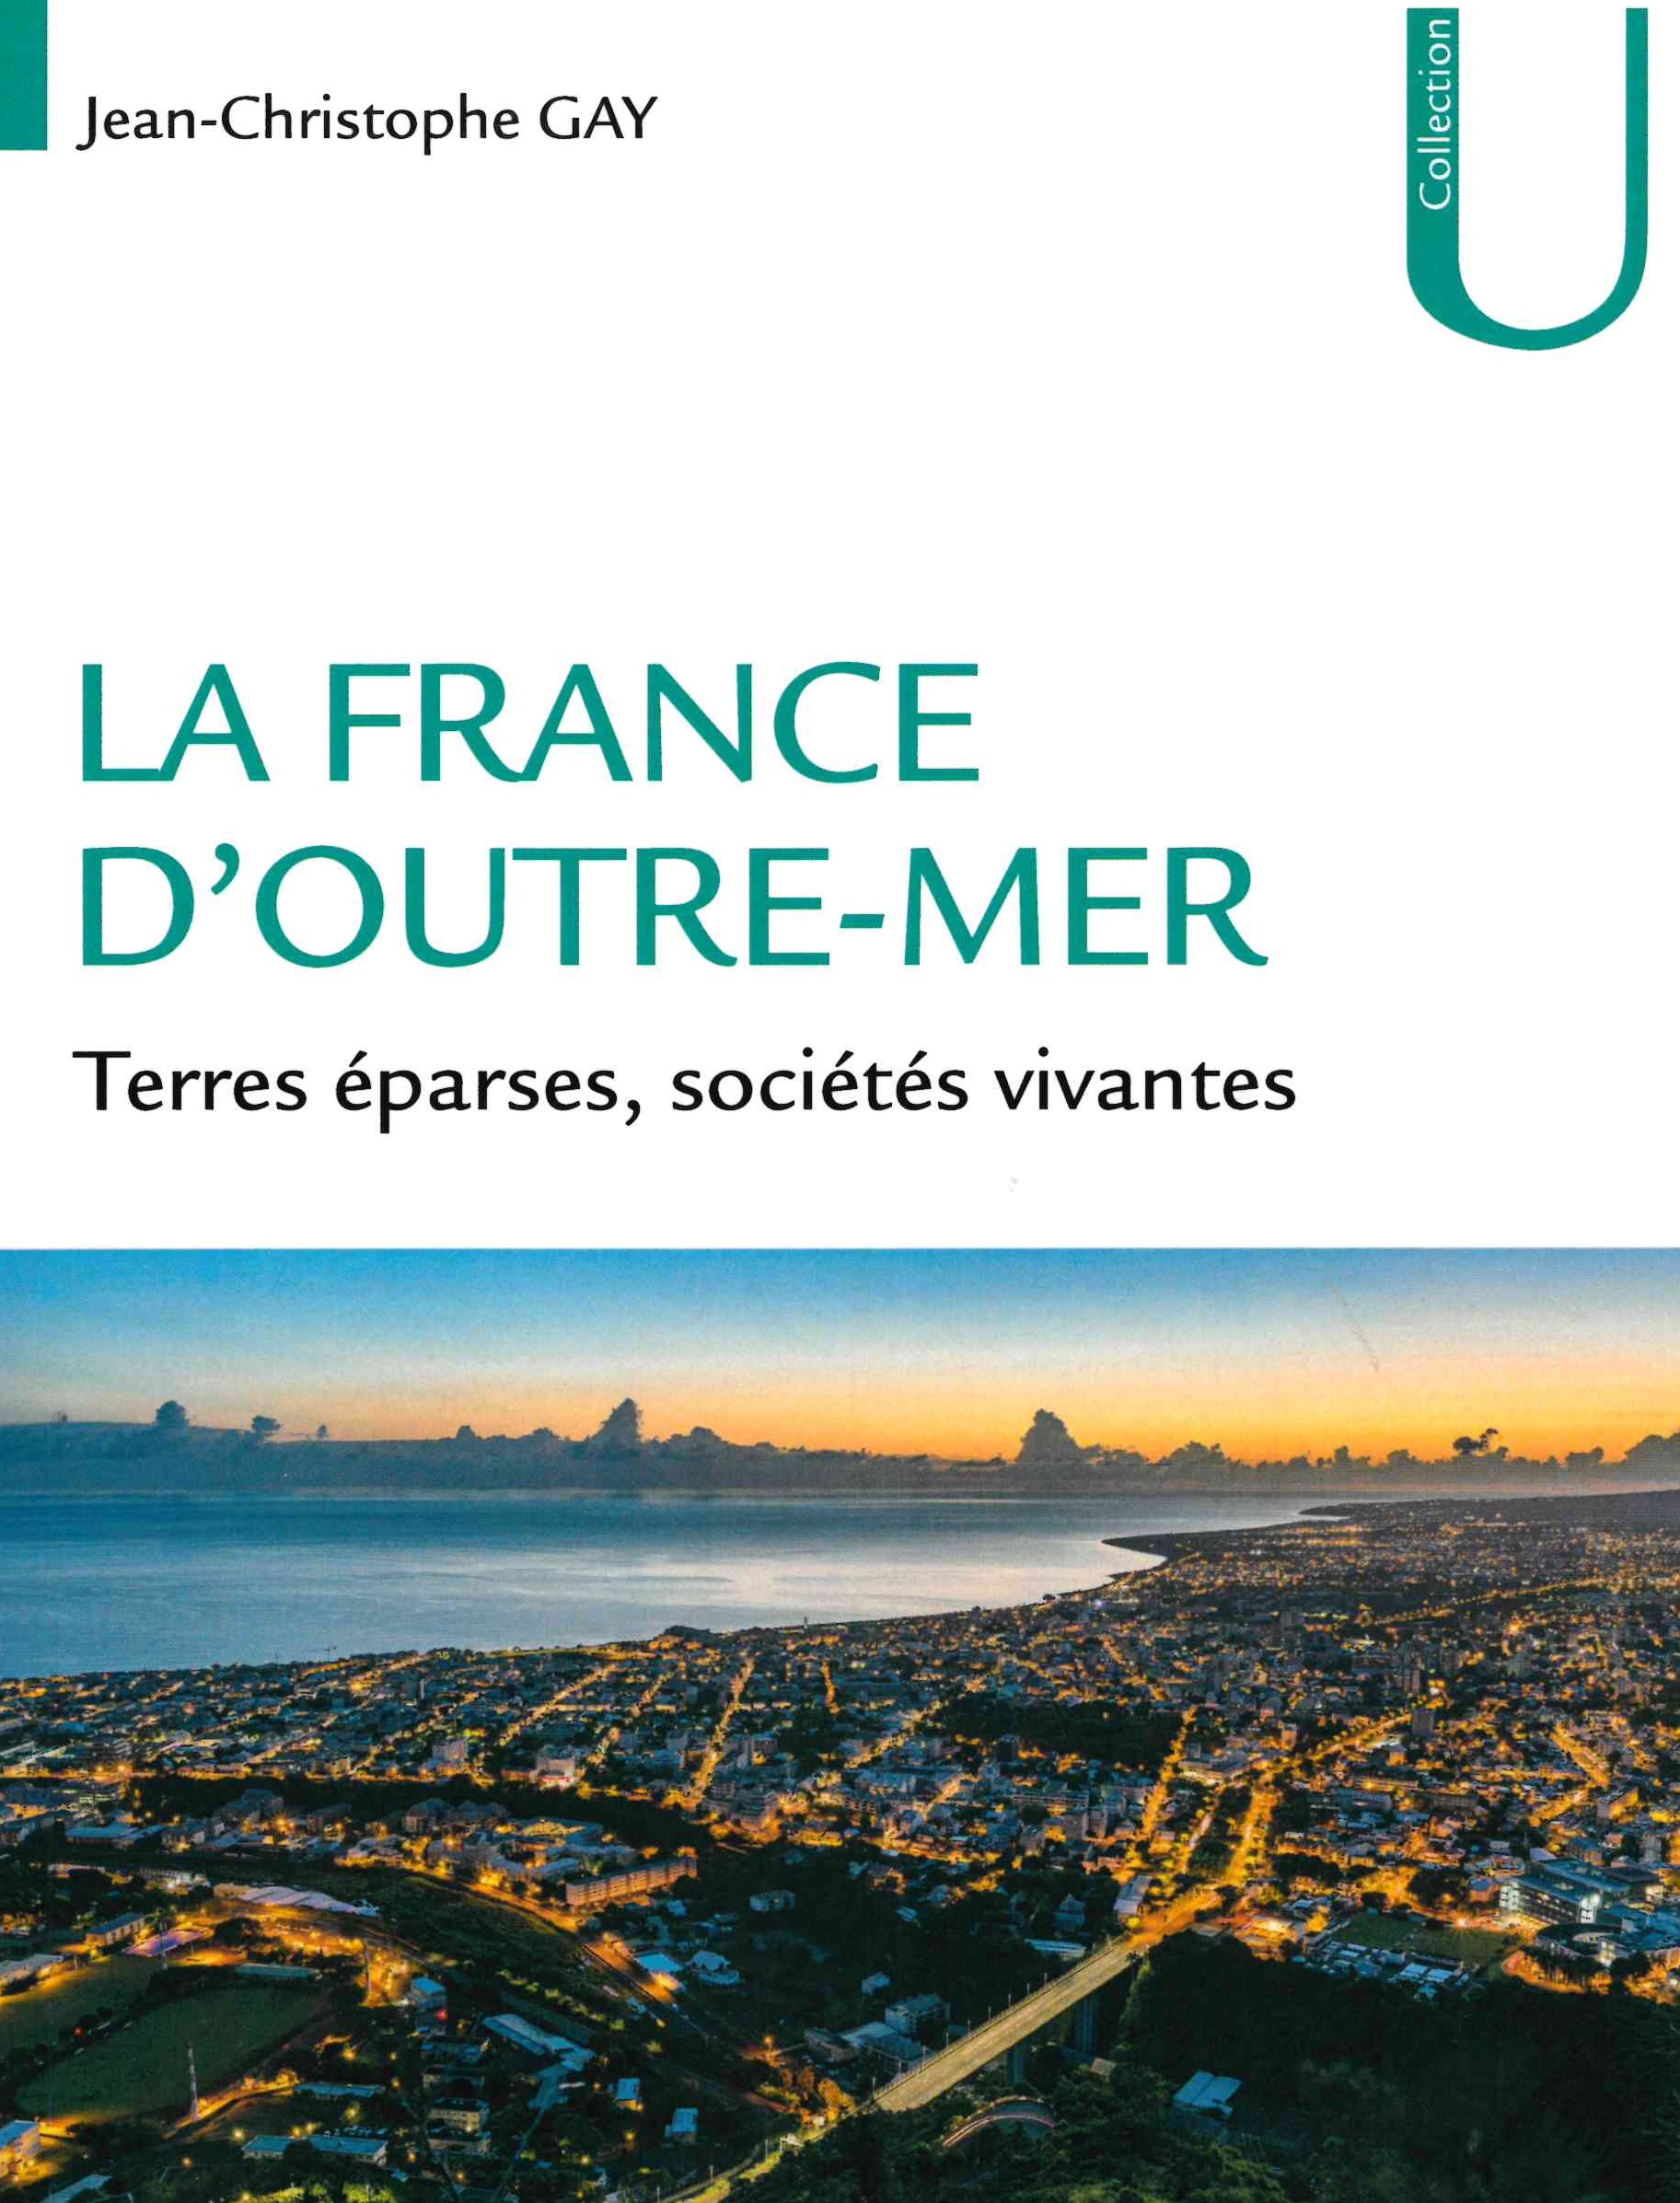 Gay (Jean-Christophe), La France d'Outre-mer : terres éparses, sociétés vivantes, Armand Colin,